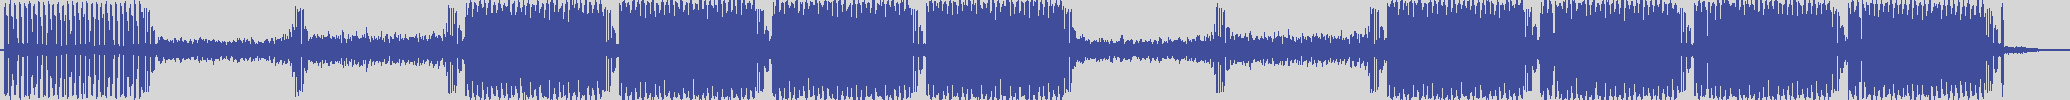 nf_boyz_records [NFY035] Pianino - Legere [La Vida Mix] audio wave form